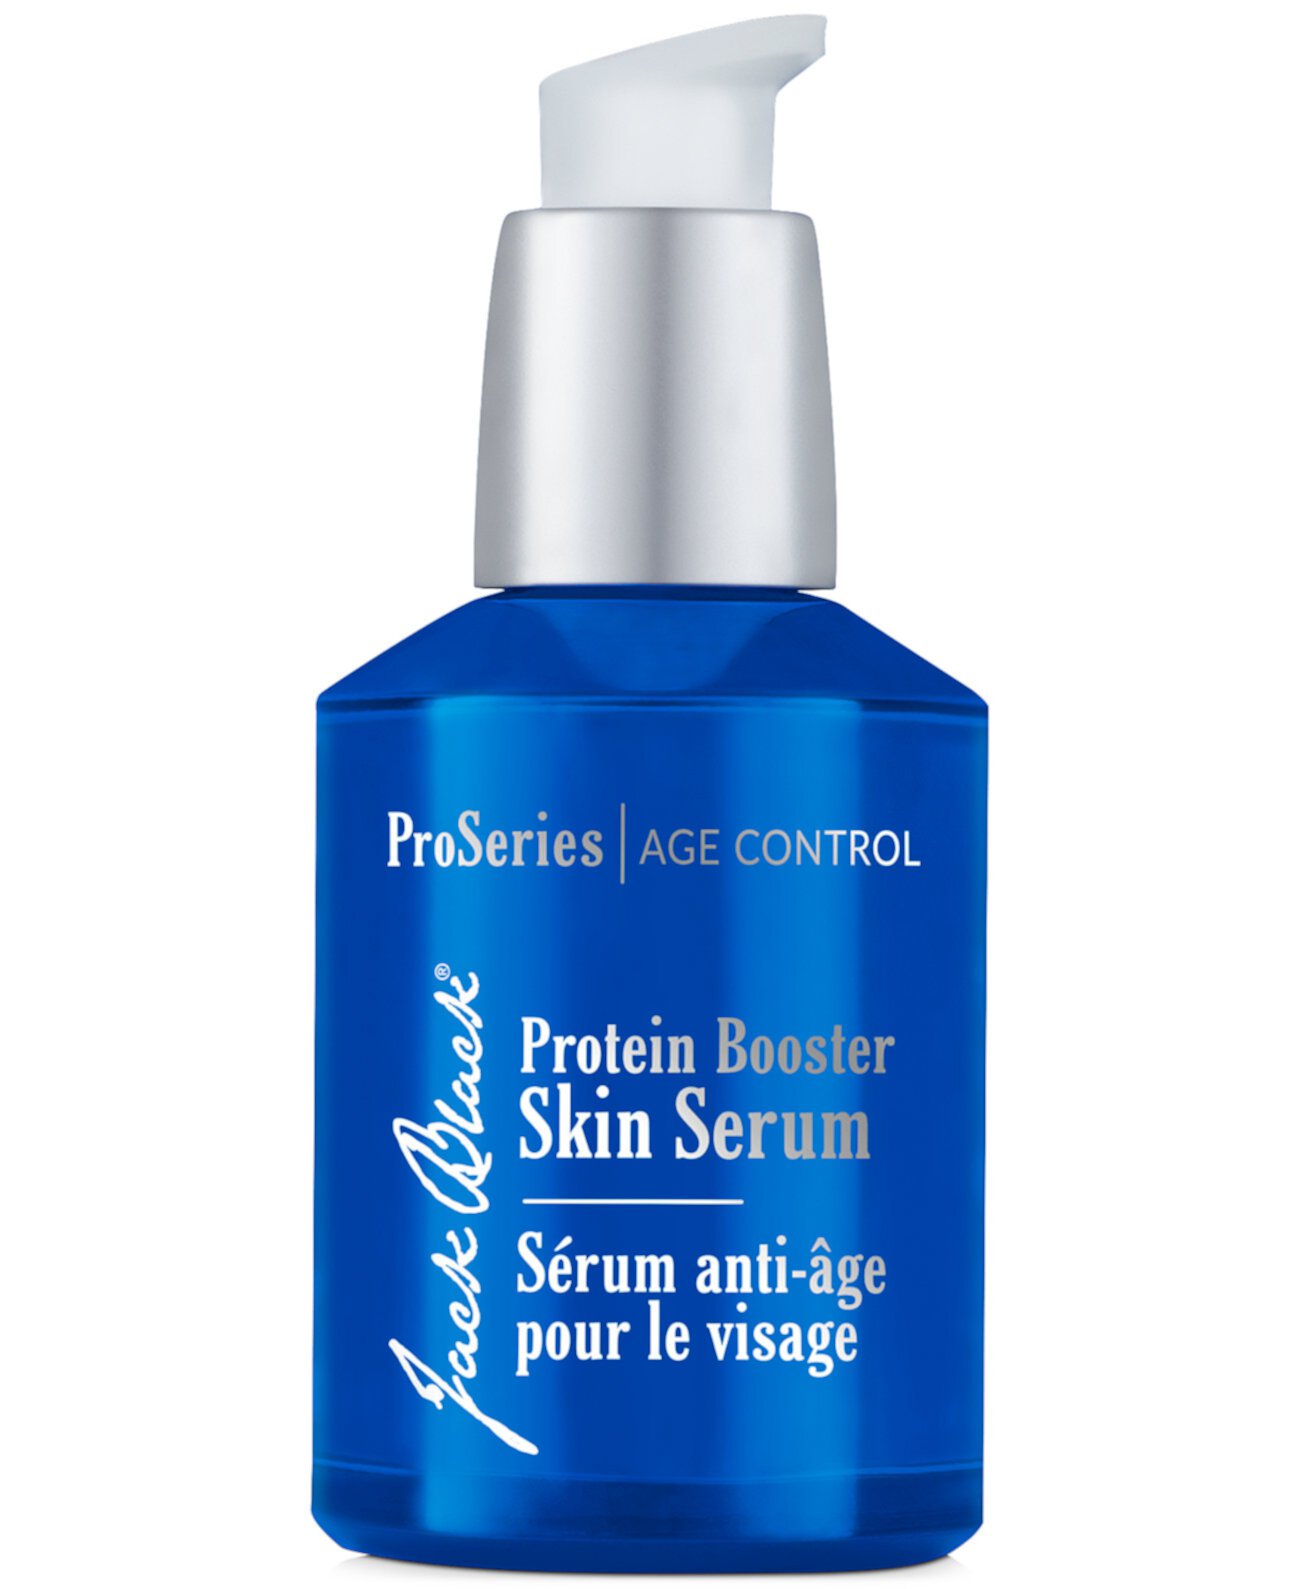 Protein Booster Skin Serum, 2-унция. Jack Black